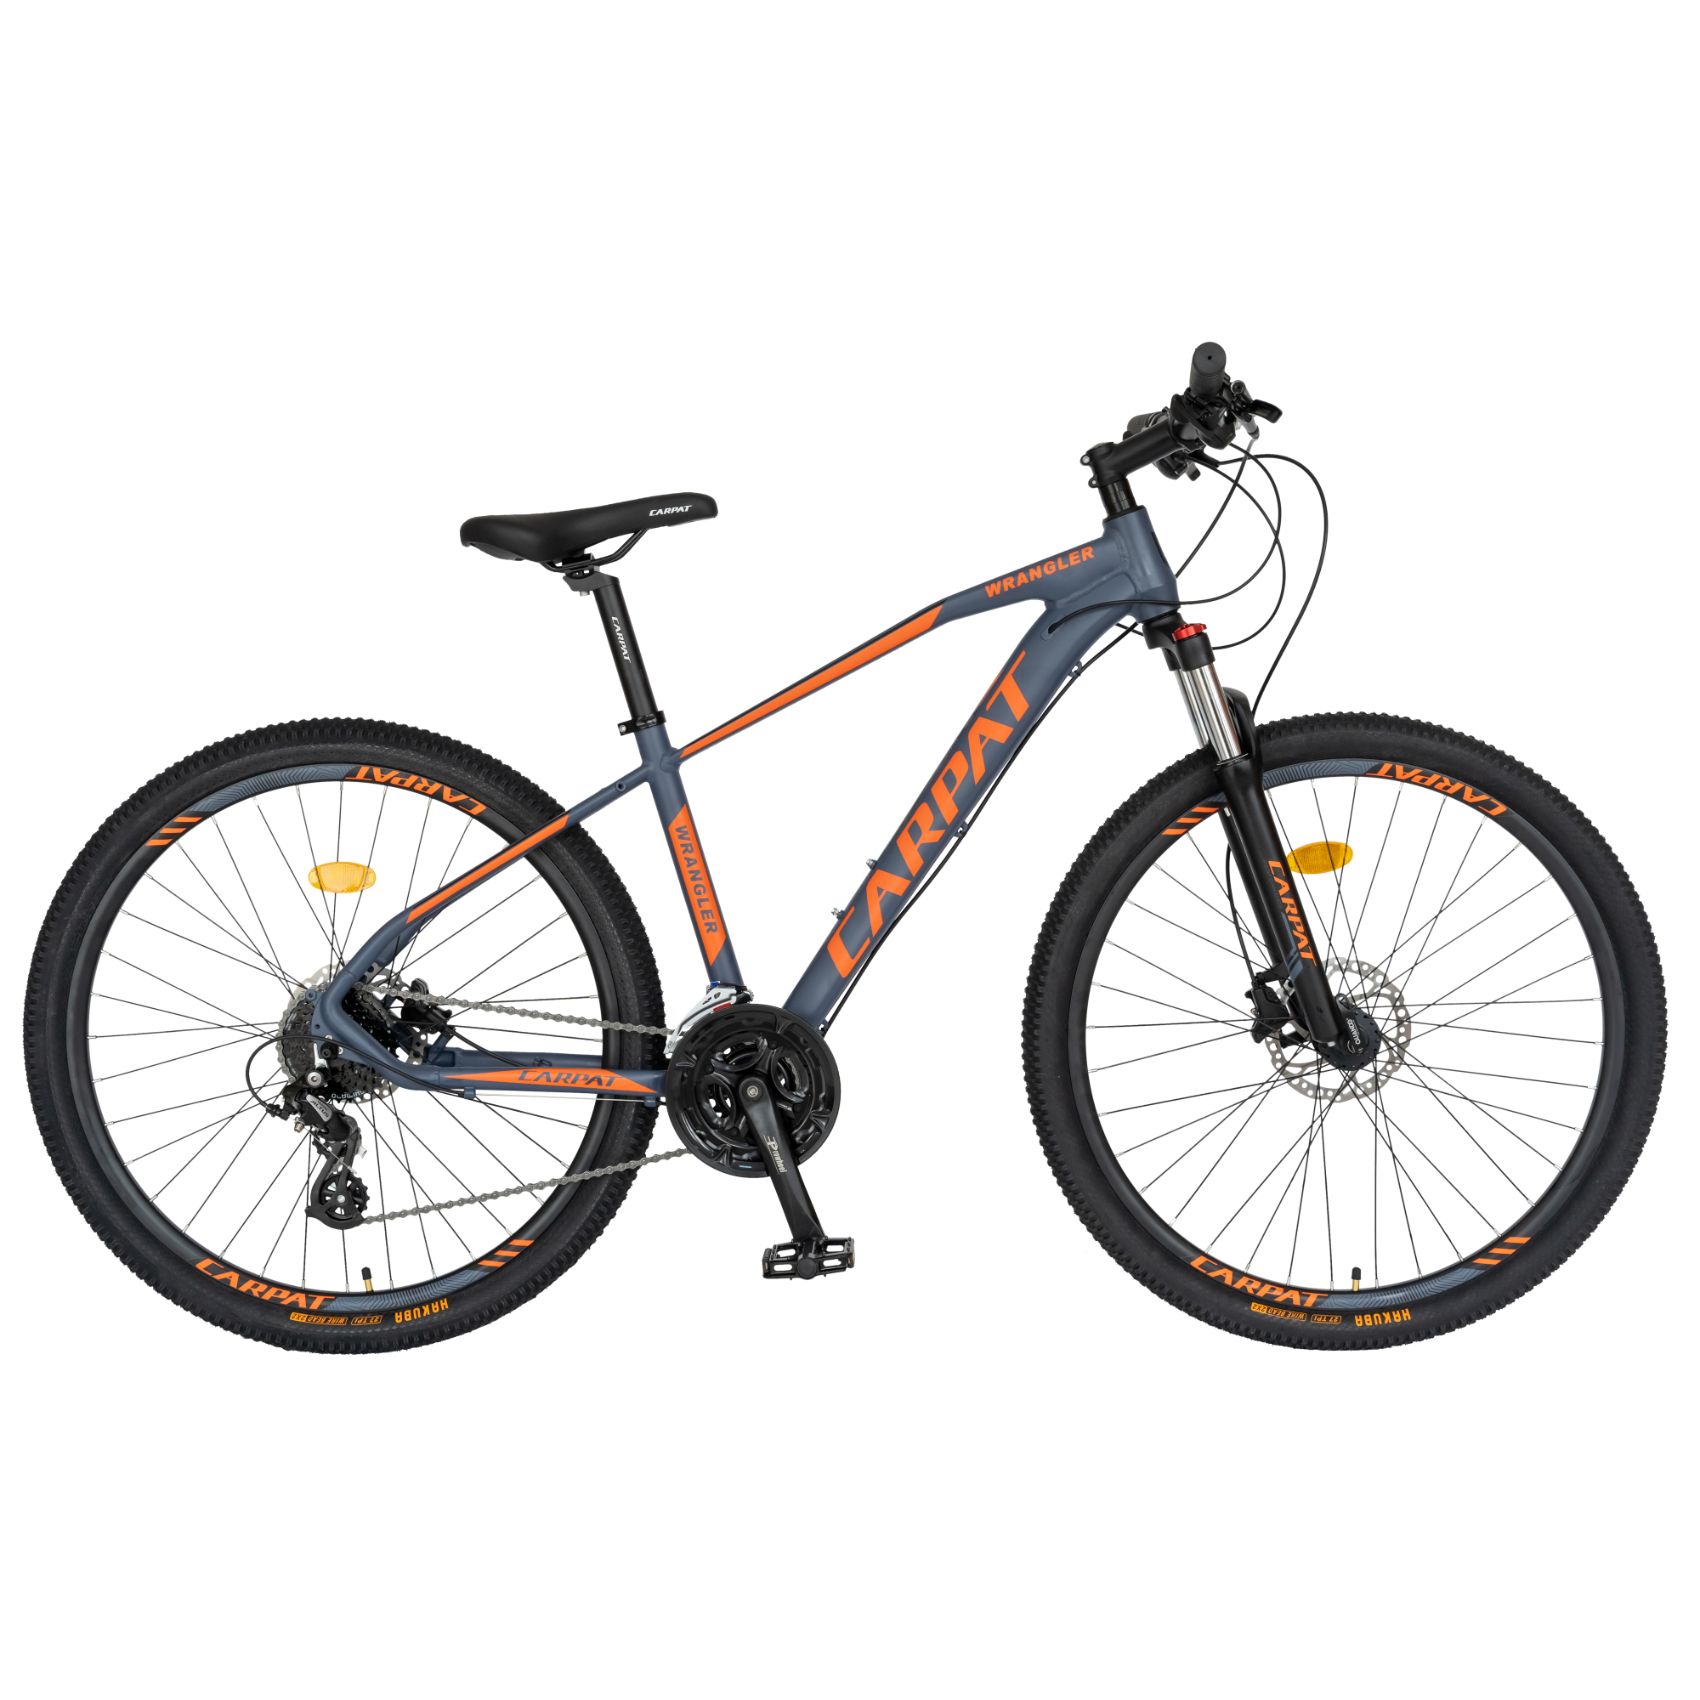 PROMO BICICLETE - Bicicleta MTB-HT Carpat Wrangler C2759AH 27.5", Negru/Portocaliu, carpatsport.ro